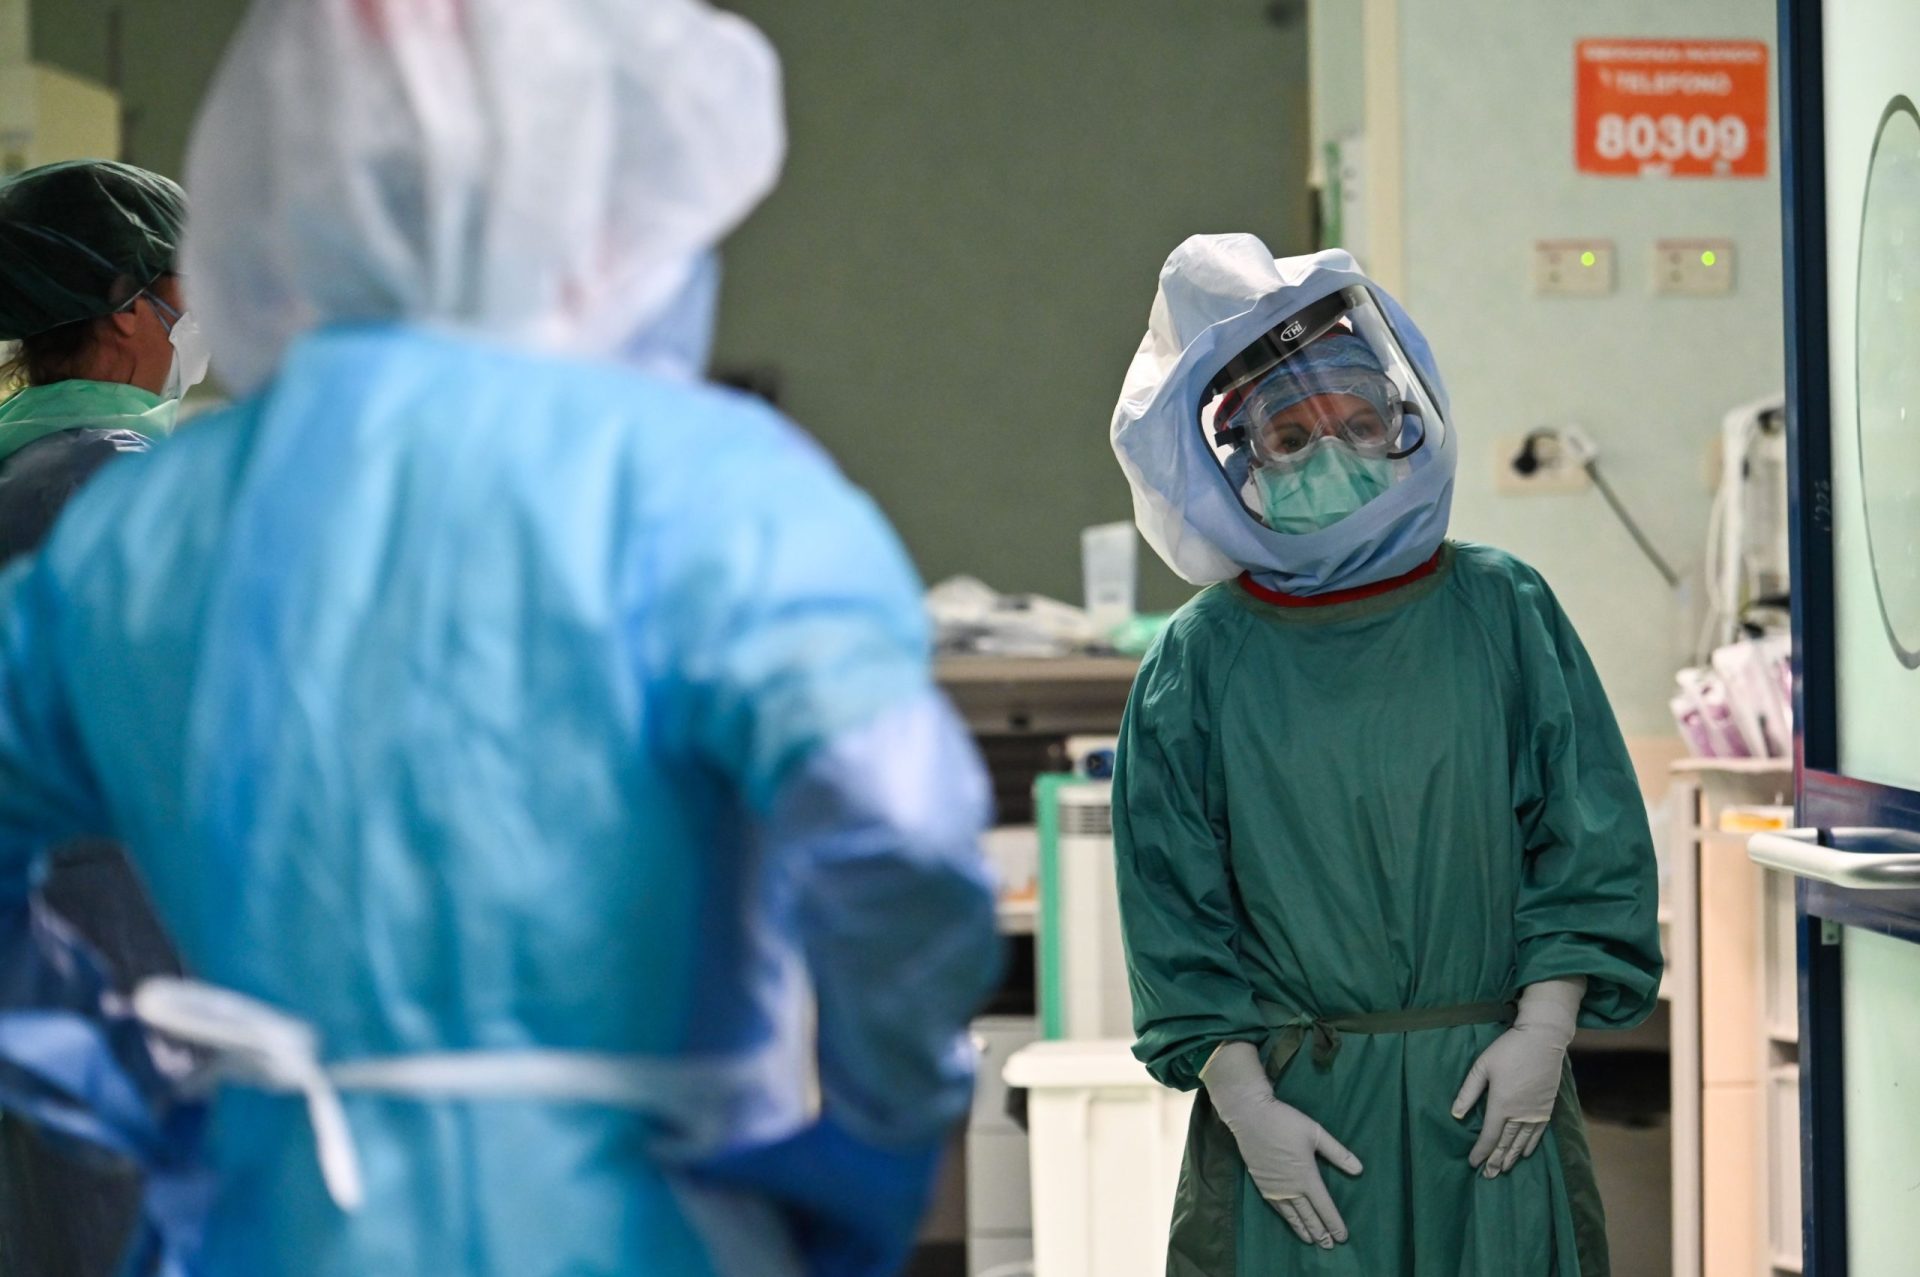 Já morreram mais de 100 médicos em Itália devido à covid-19. Profissionais combatem pandemia “descalços” de proteção